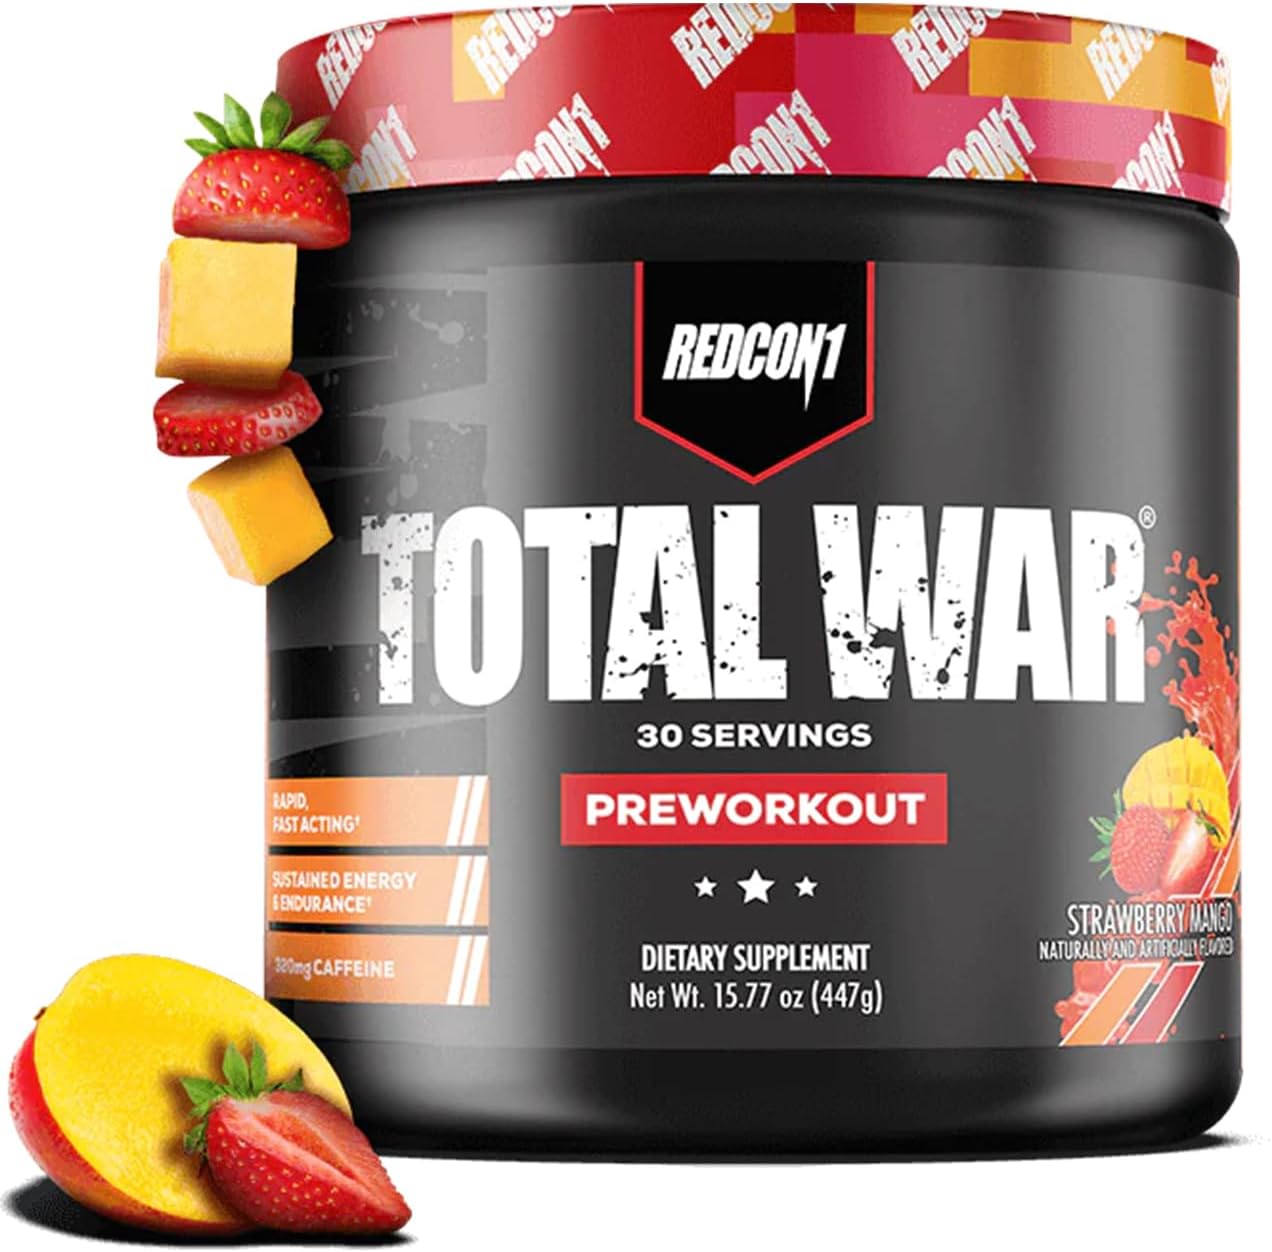 REDCON1 Total War Pre Workout Powder, Strawberry Mango - Beta Alanine